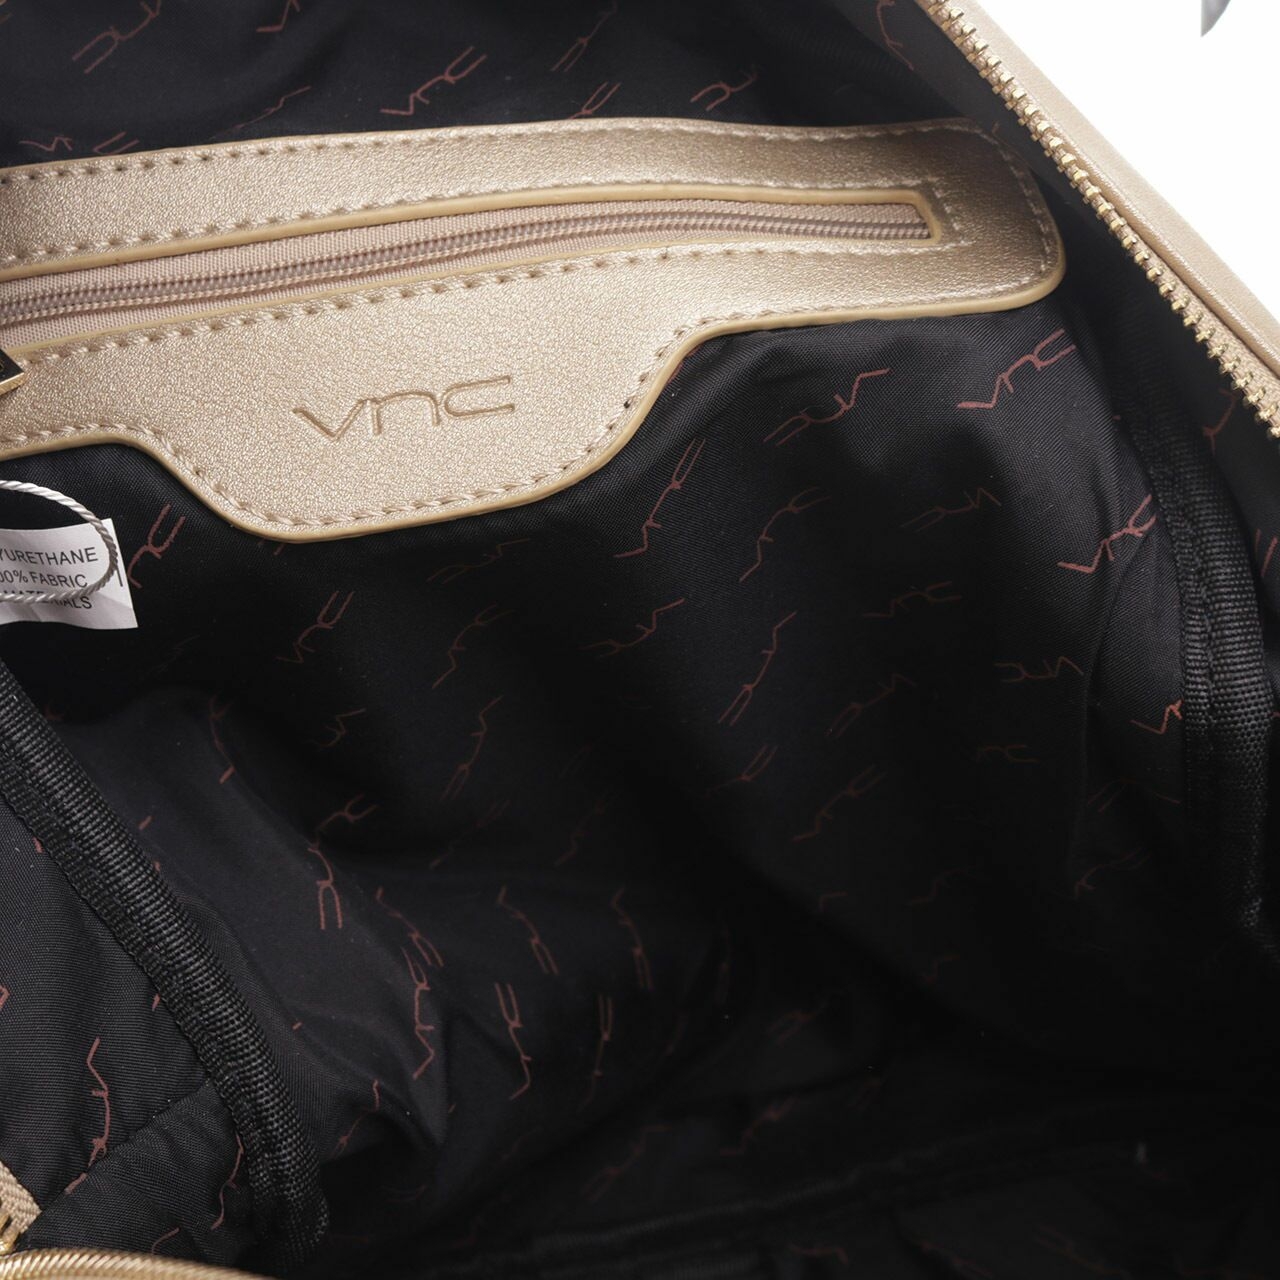 VNC Gold Backpack